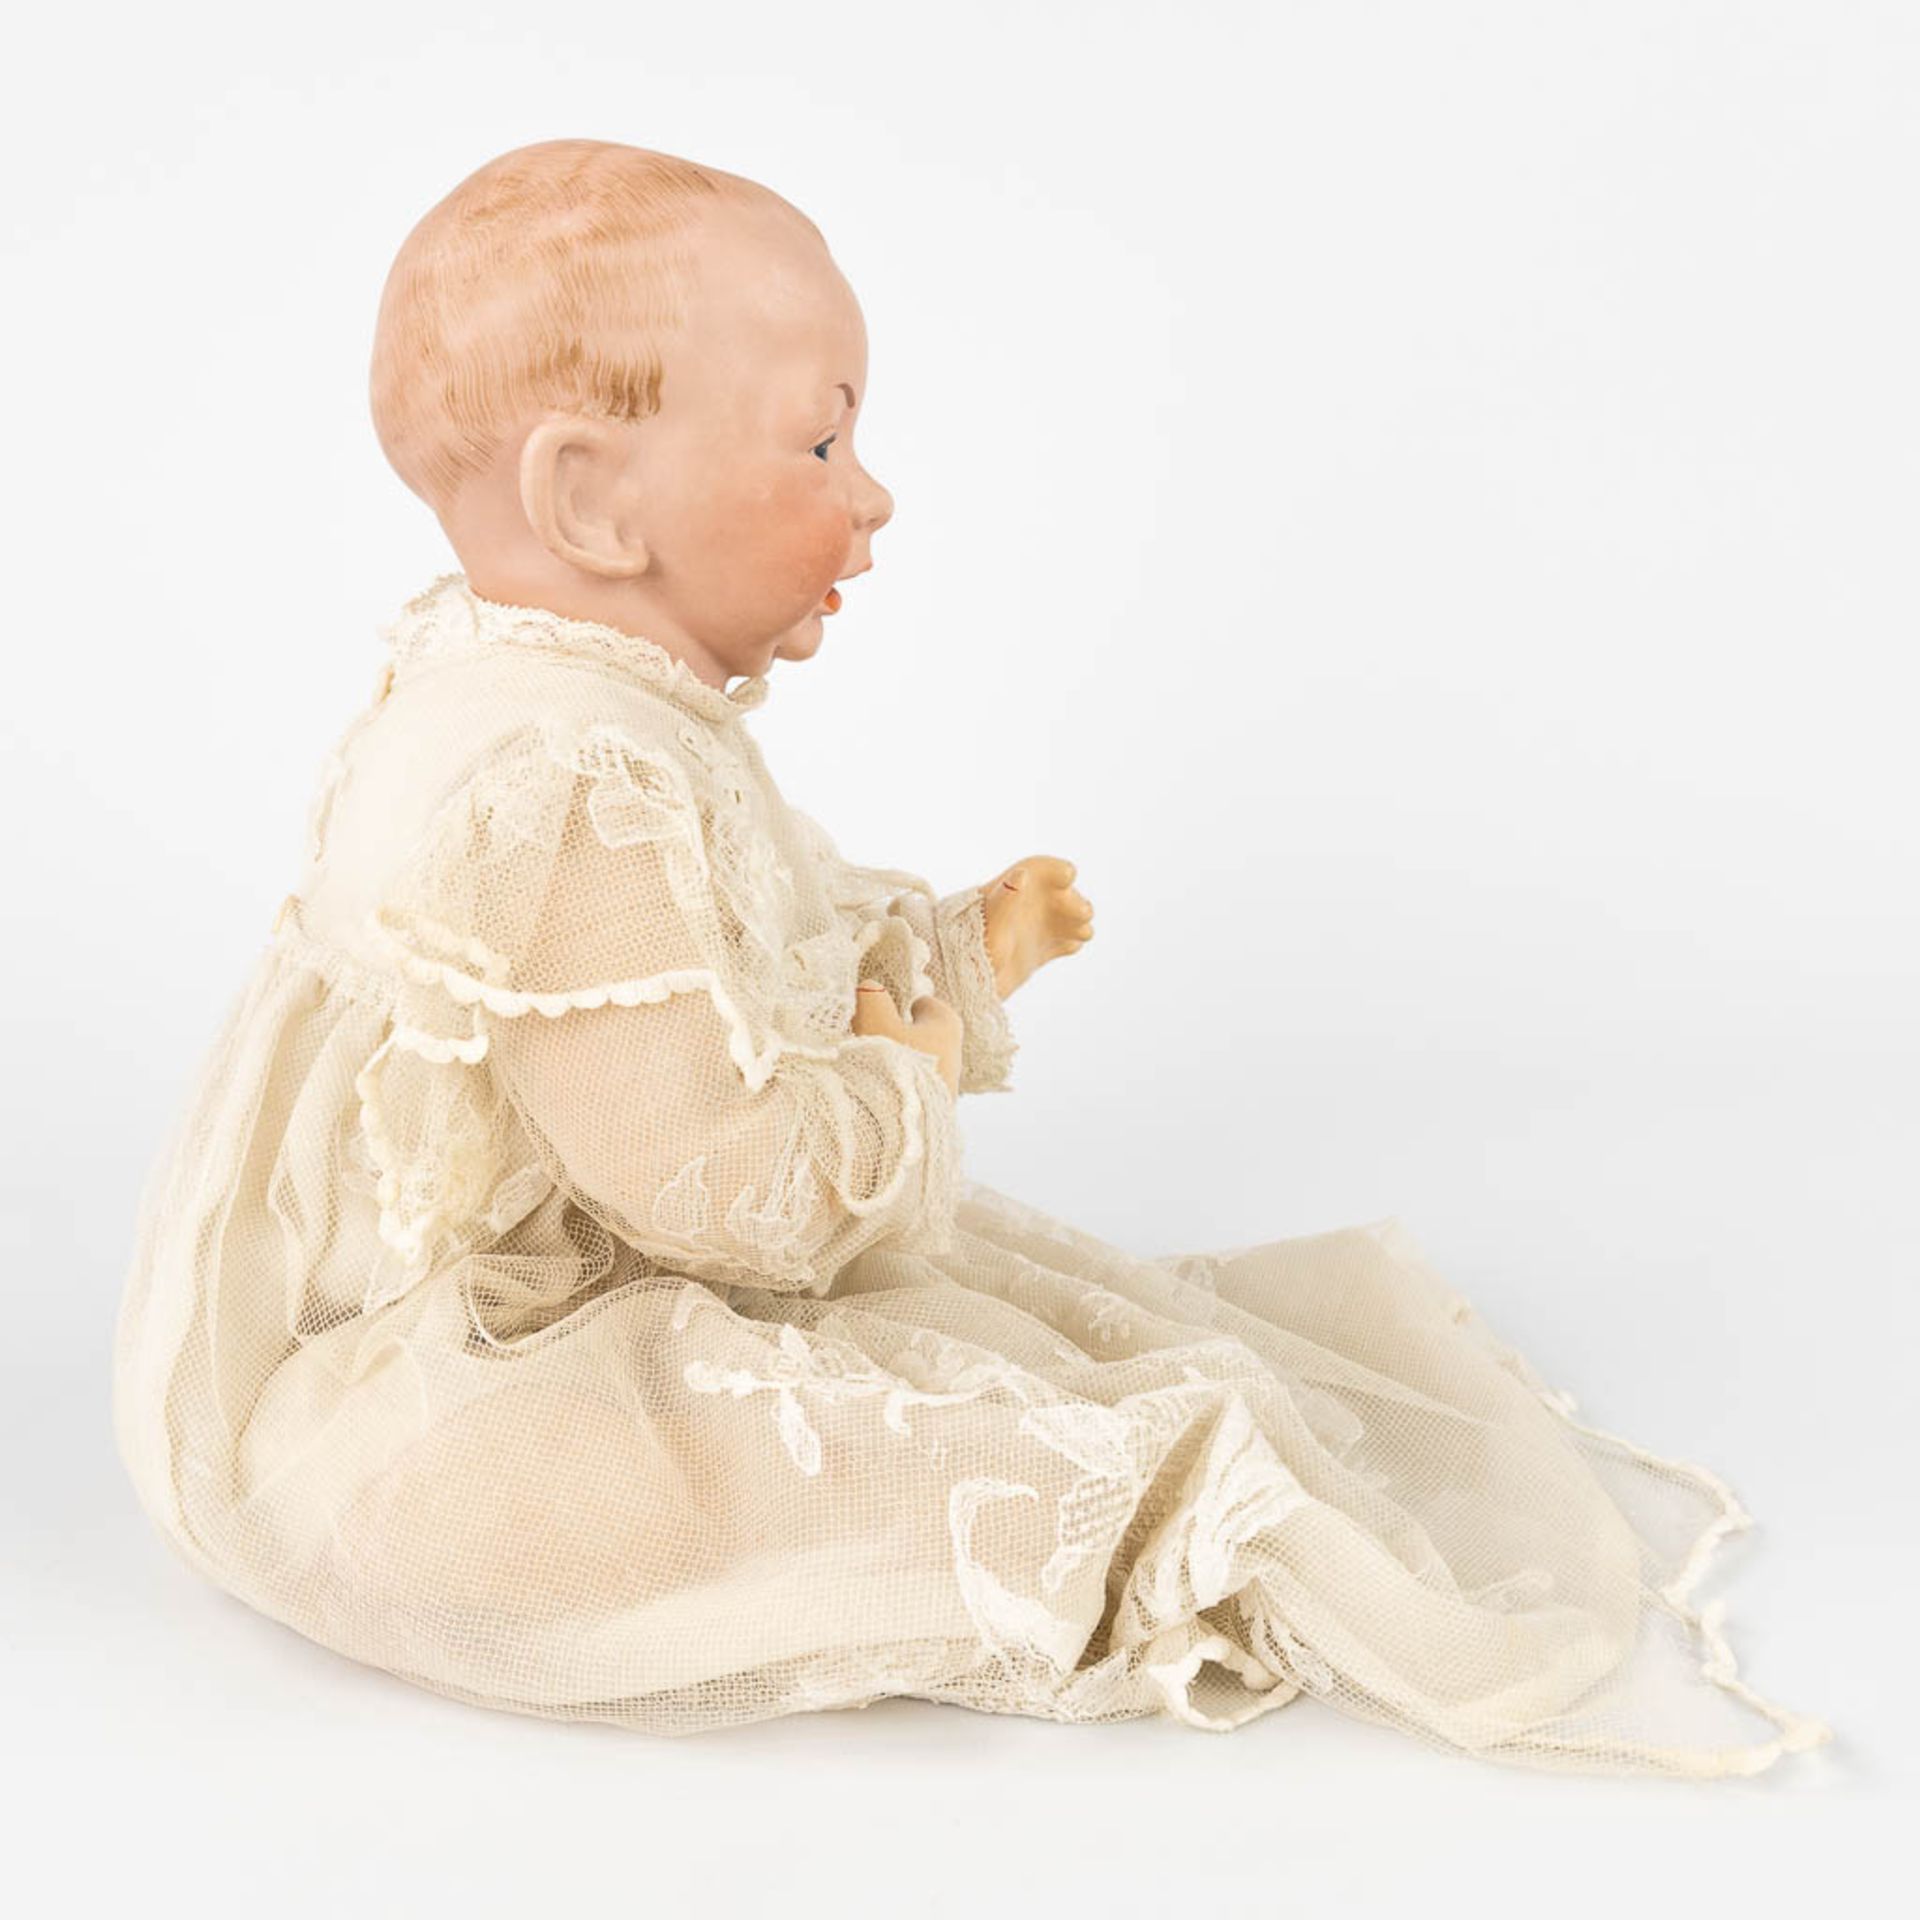 K_mmer & Reinhardt no. 36 'Kaiser baby' (H:36 cm) - Image 6 of 22